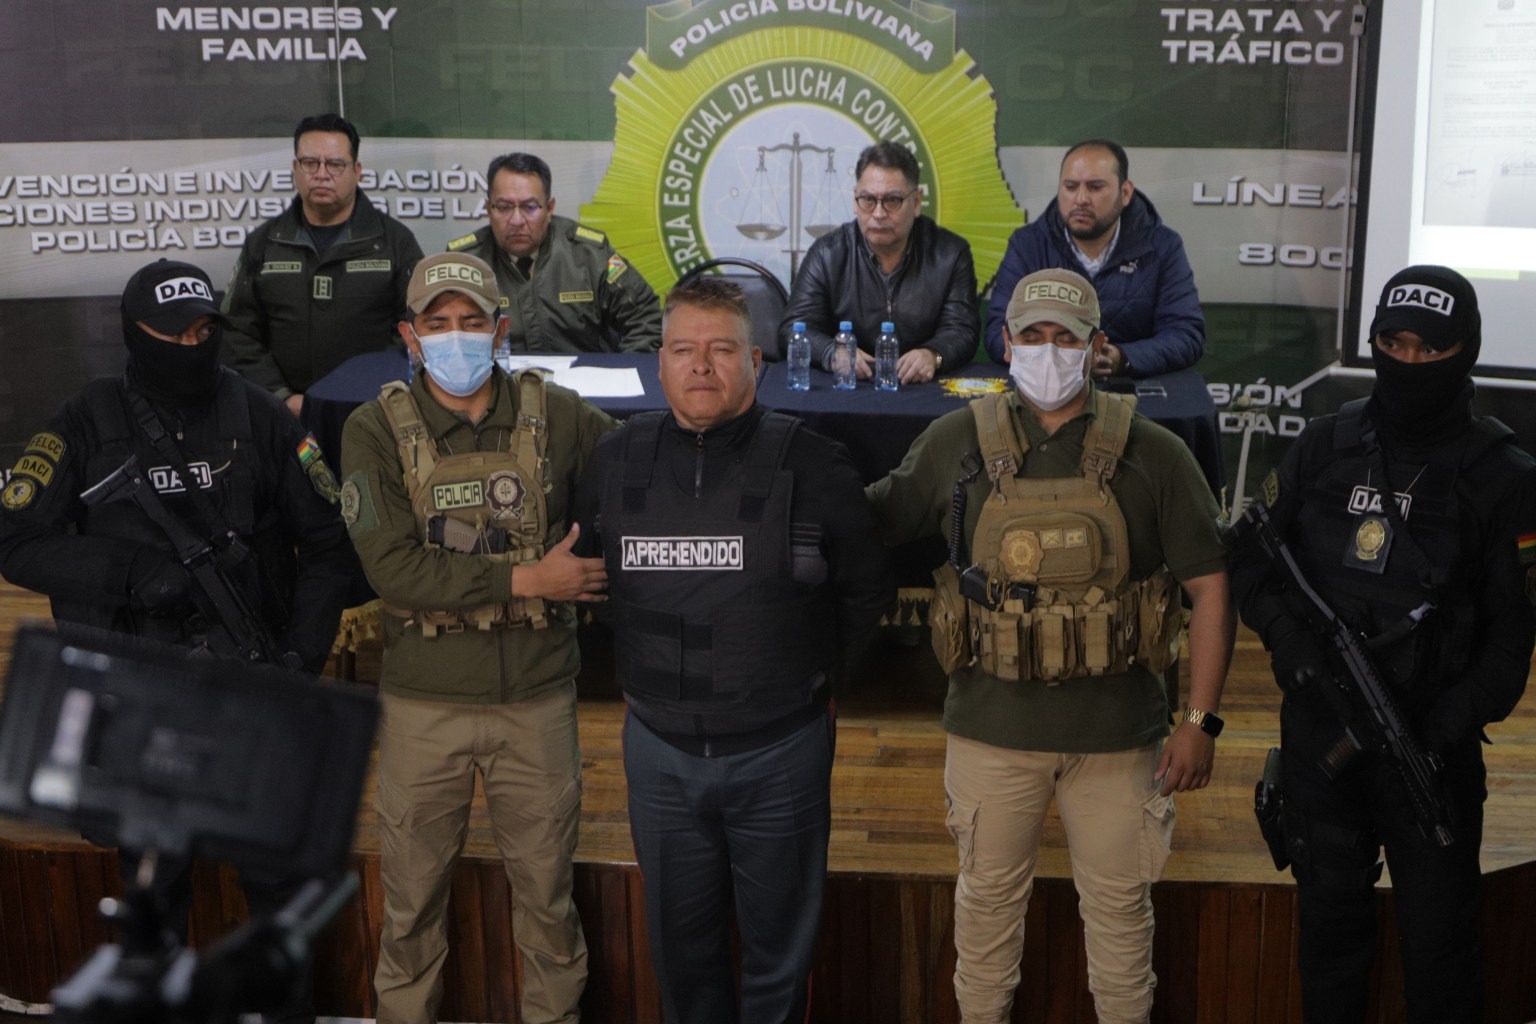 Militar que lideró levantamiento en Bolivia tenía discurso y gabinete ministerial